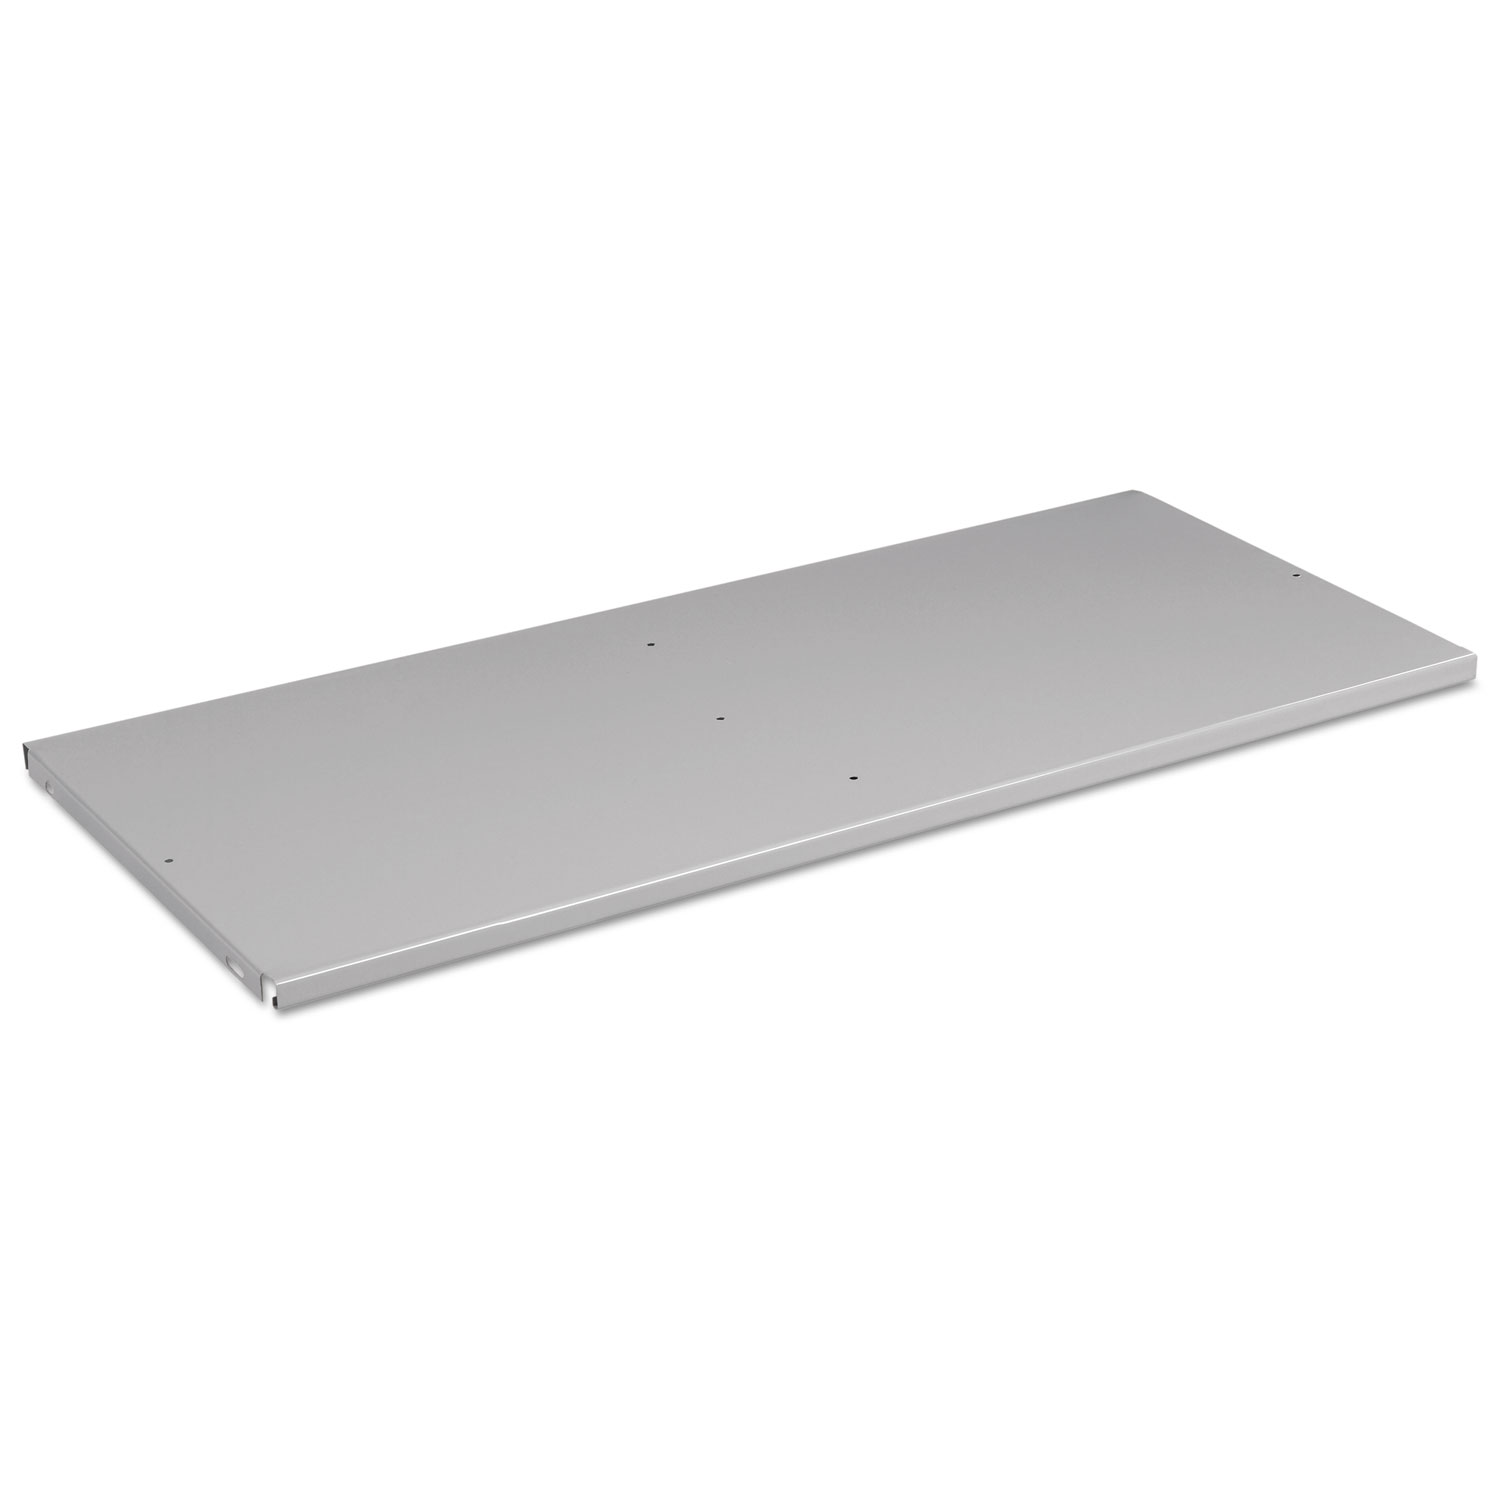 Steel Shelf for Heavy Duty Welded Storage Cabinet, 36w x 24d, Light Gray